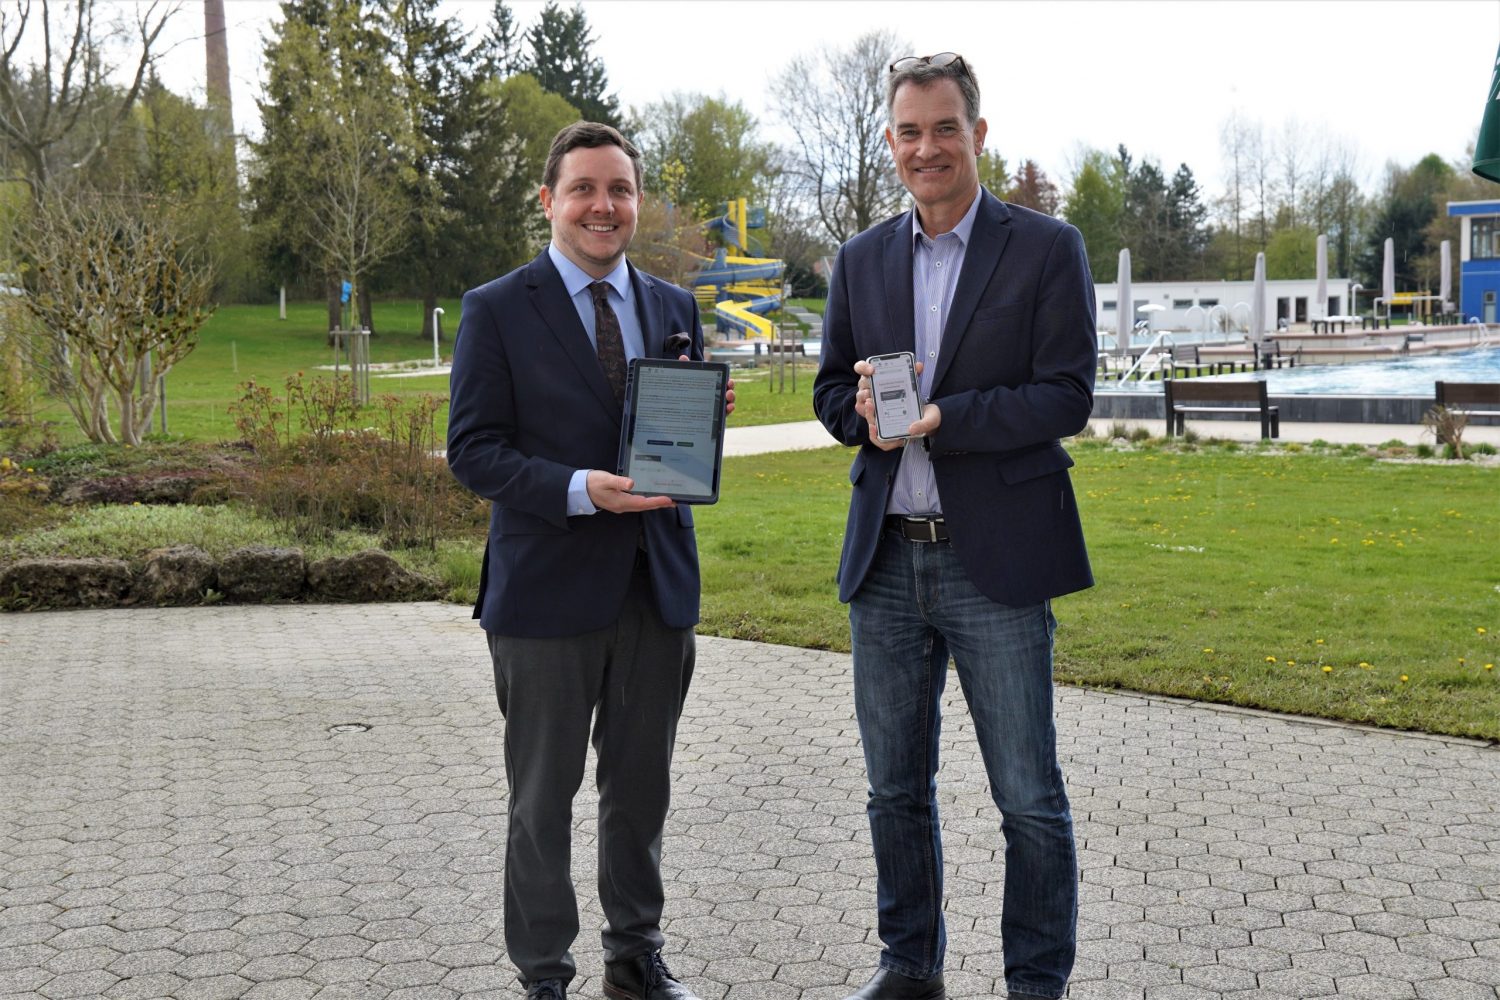 der erste Bürgermeister Hans-Peter Dangschat und der Werkleiter zeigen stolz ein Tablet und ein Handy, auf dem der neue onlineshop der Stadtwerke zu sehen ist